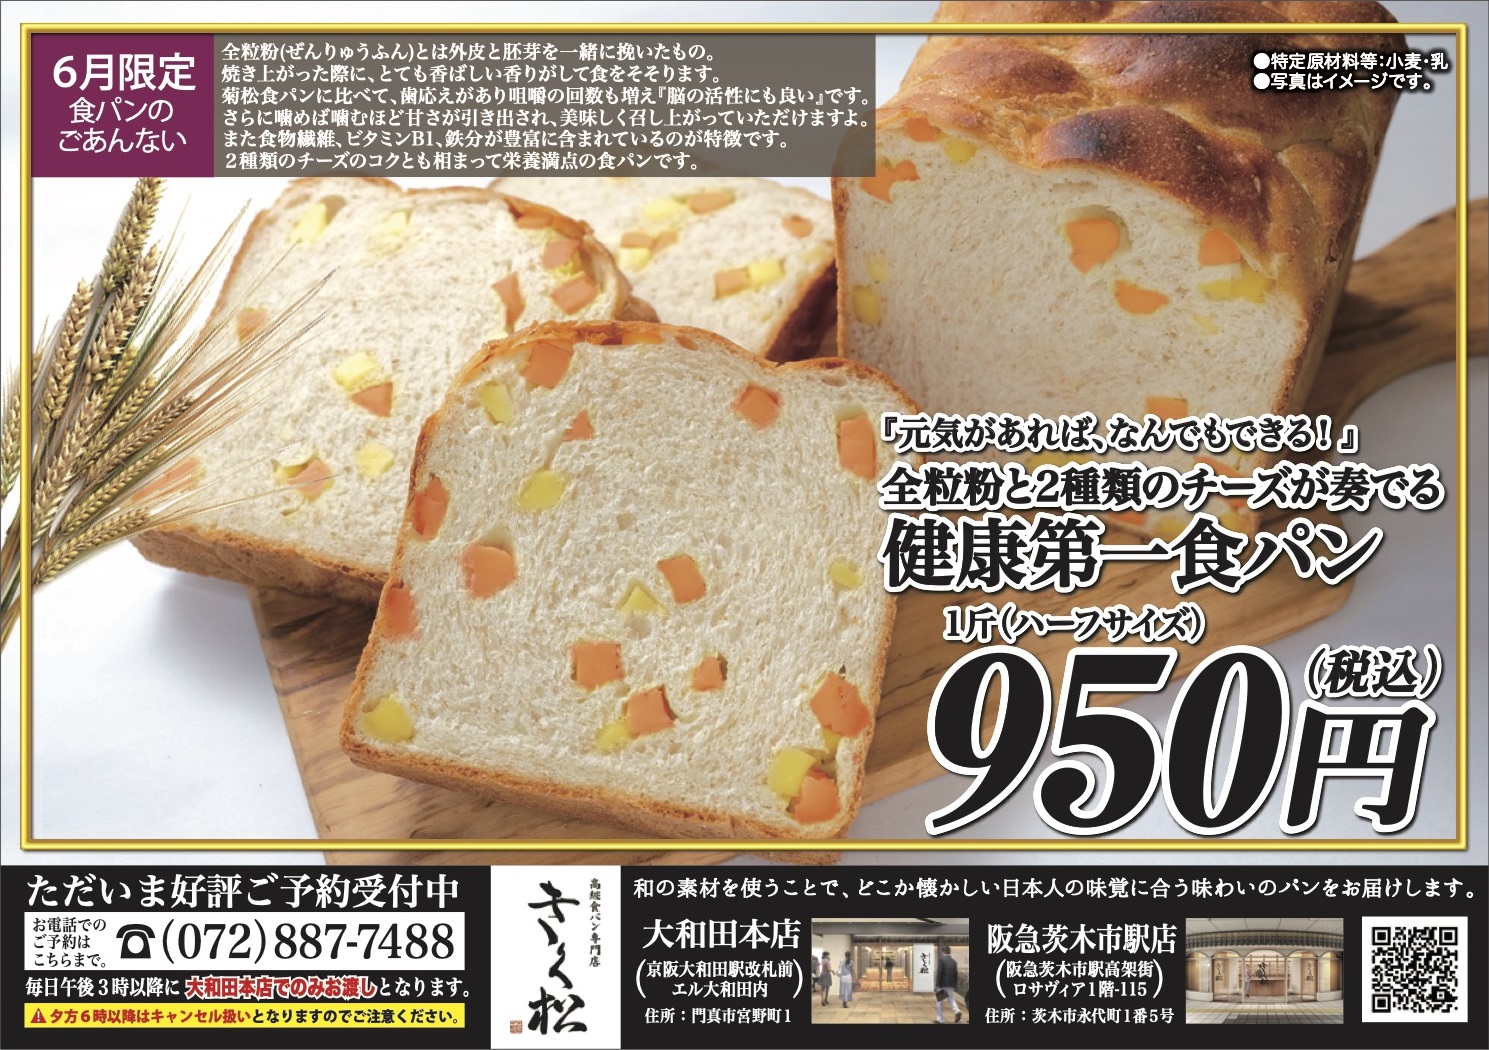 6月の限定食パンは【『元気があれば、なんでもできる!』全粒粉と2種類のチーズが奏でる　健康第一食パン】